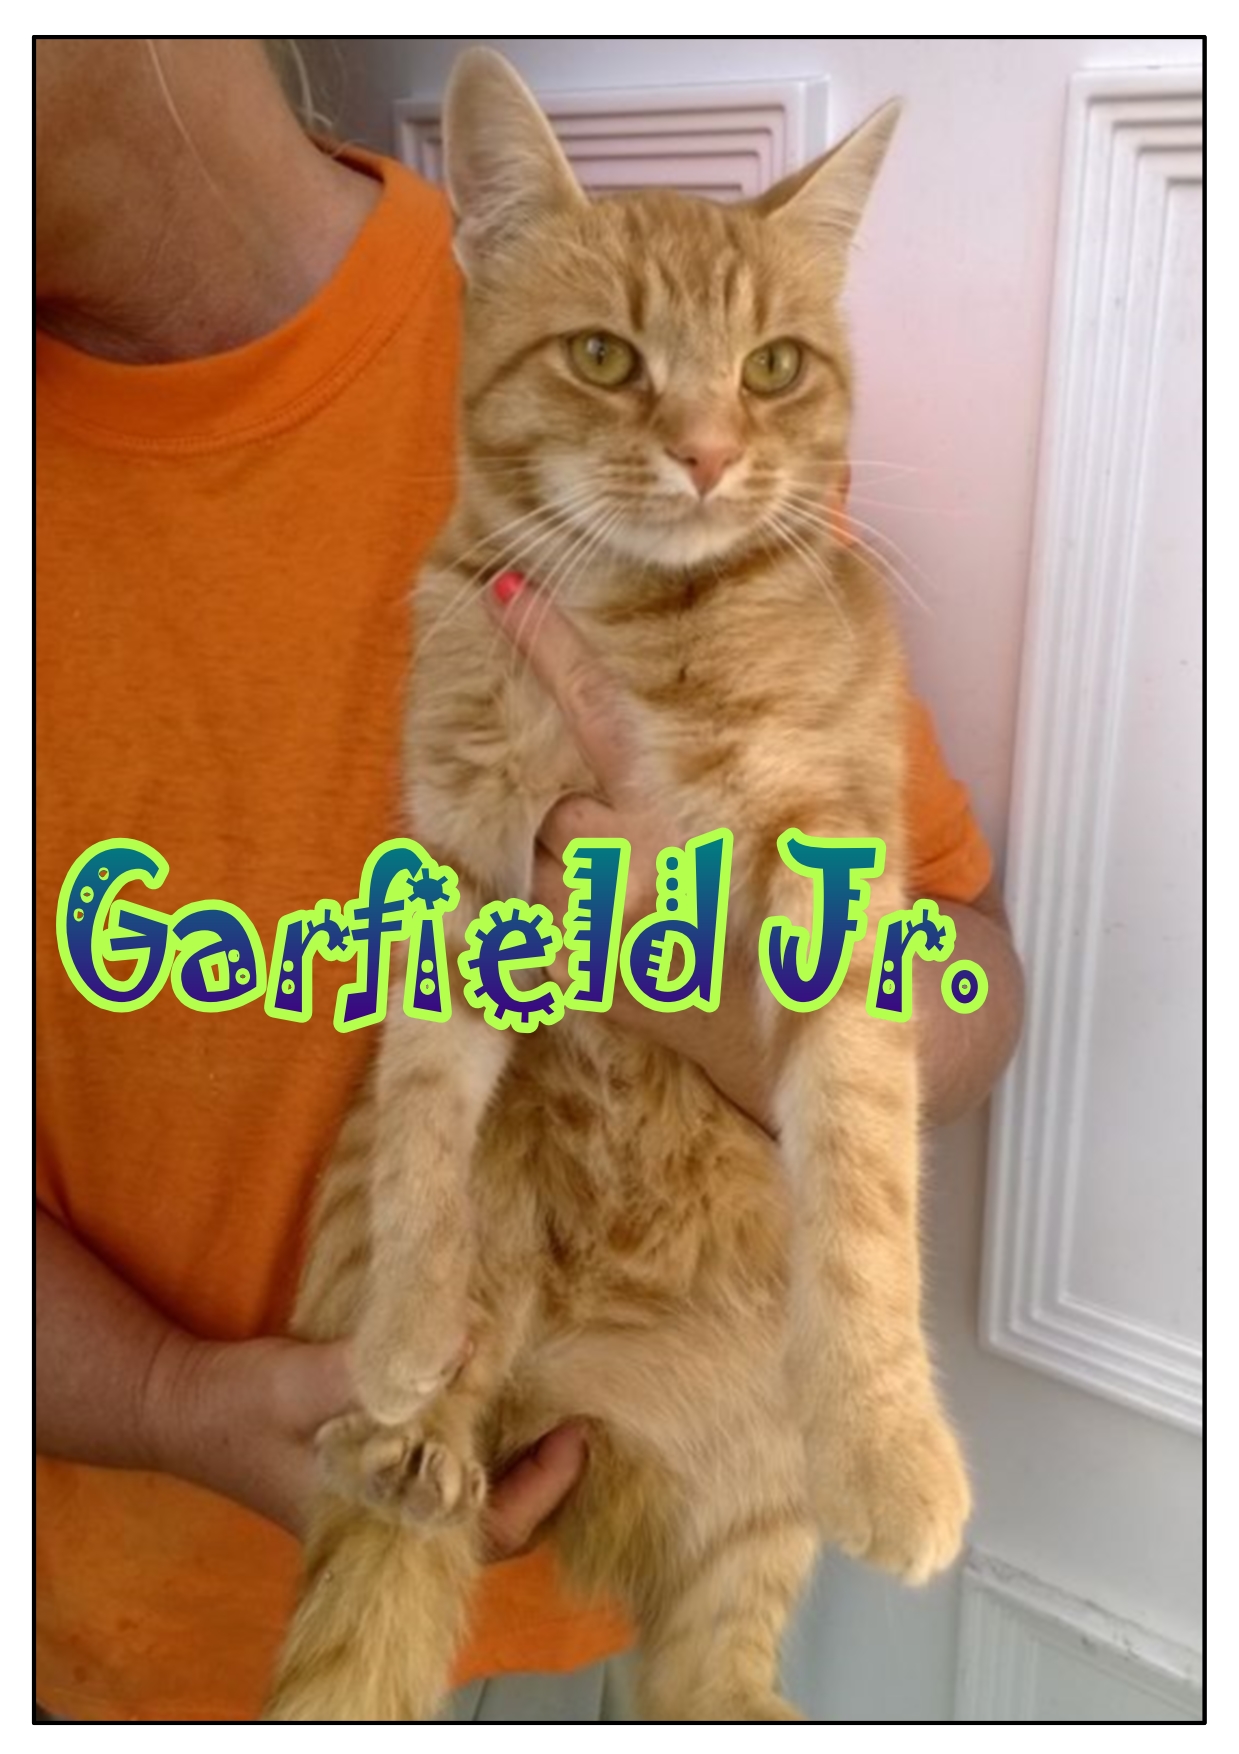 Garfield Jr_2.jpg